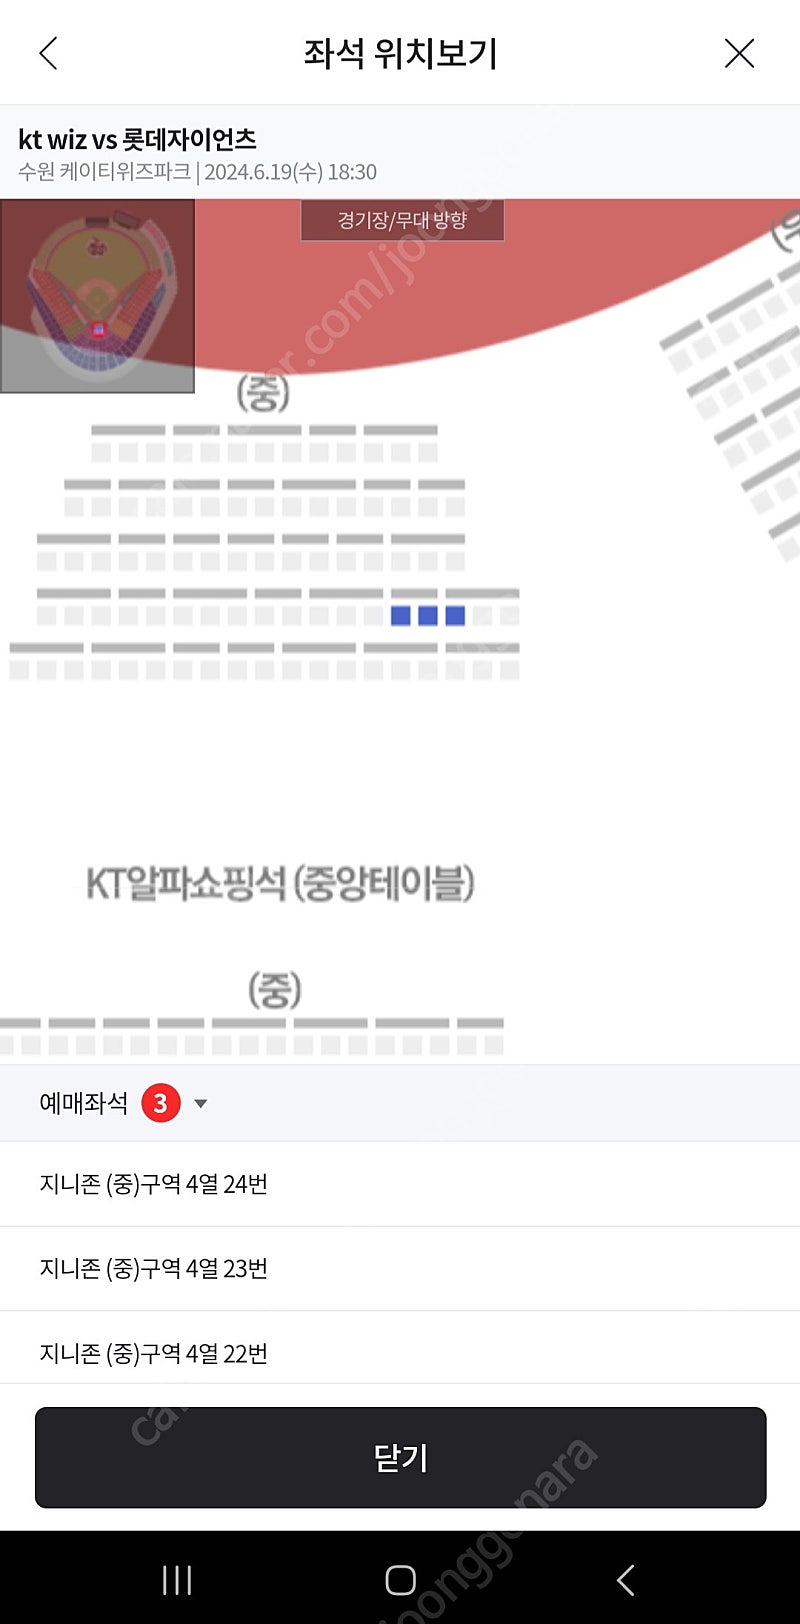 6.19(수) 수원 KT vs 롯데 테이블석(지니존) 중앙, 정가판매